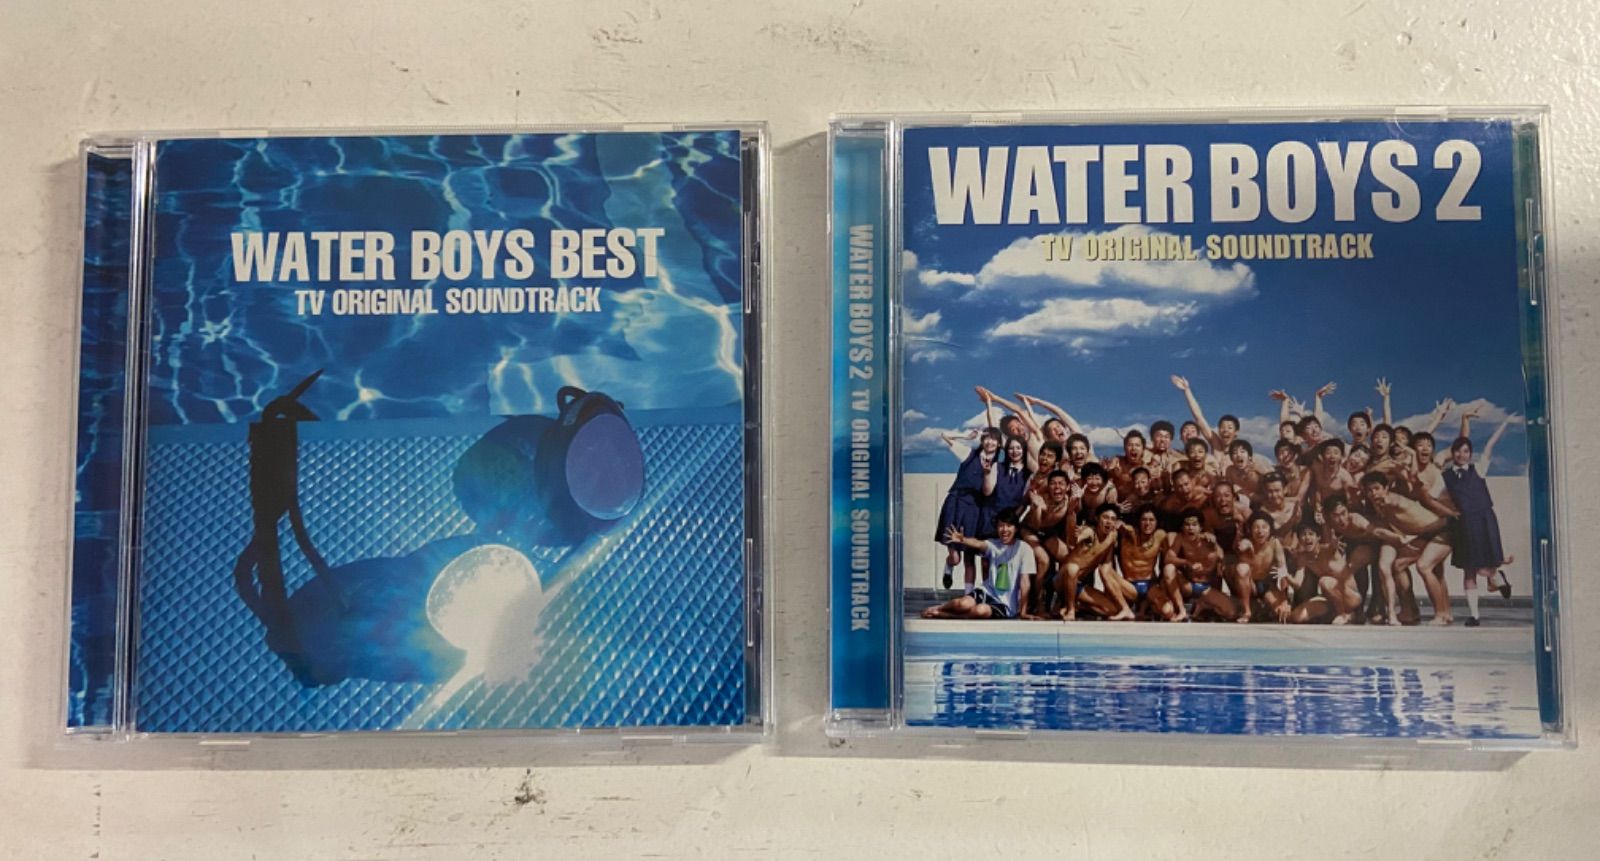 8周年記念イベントが WATER BOYS BEST-TVオリジナル サウンドトラック